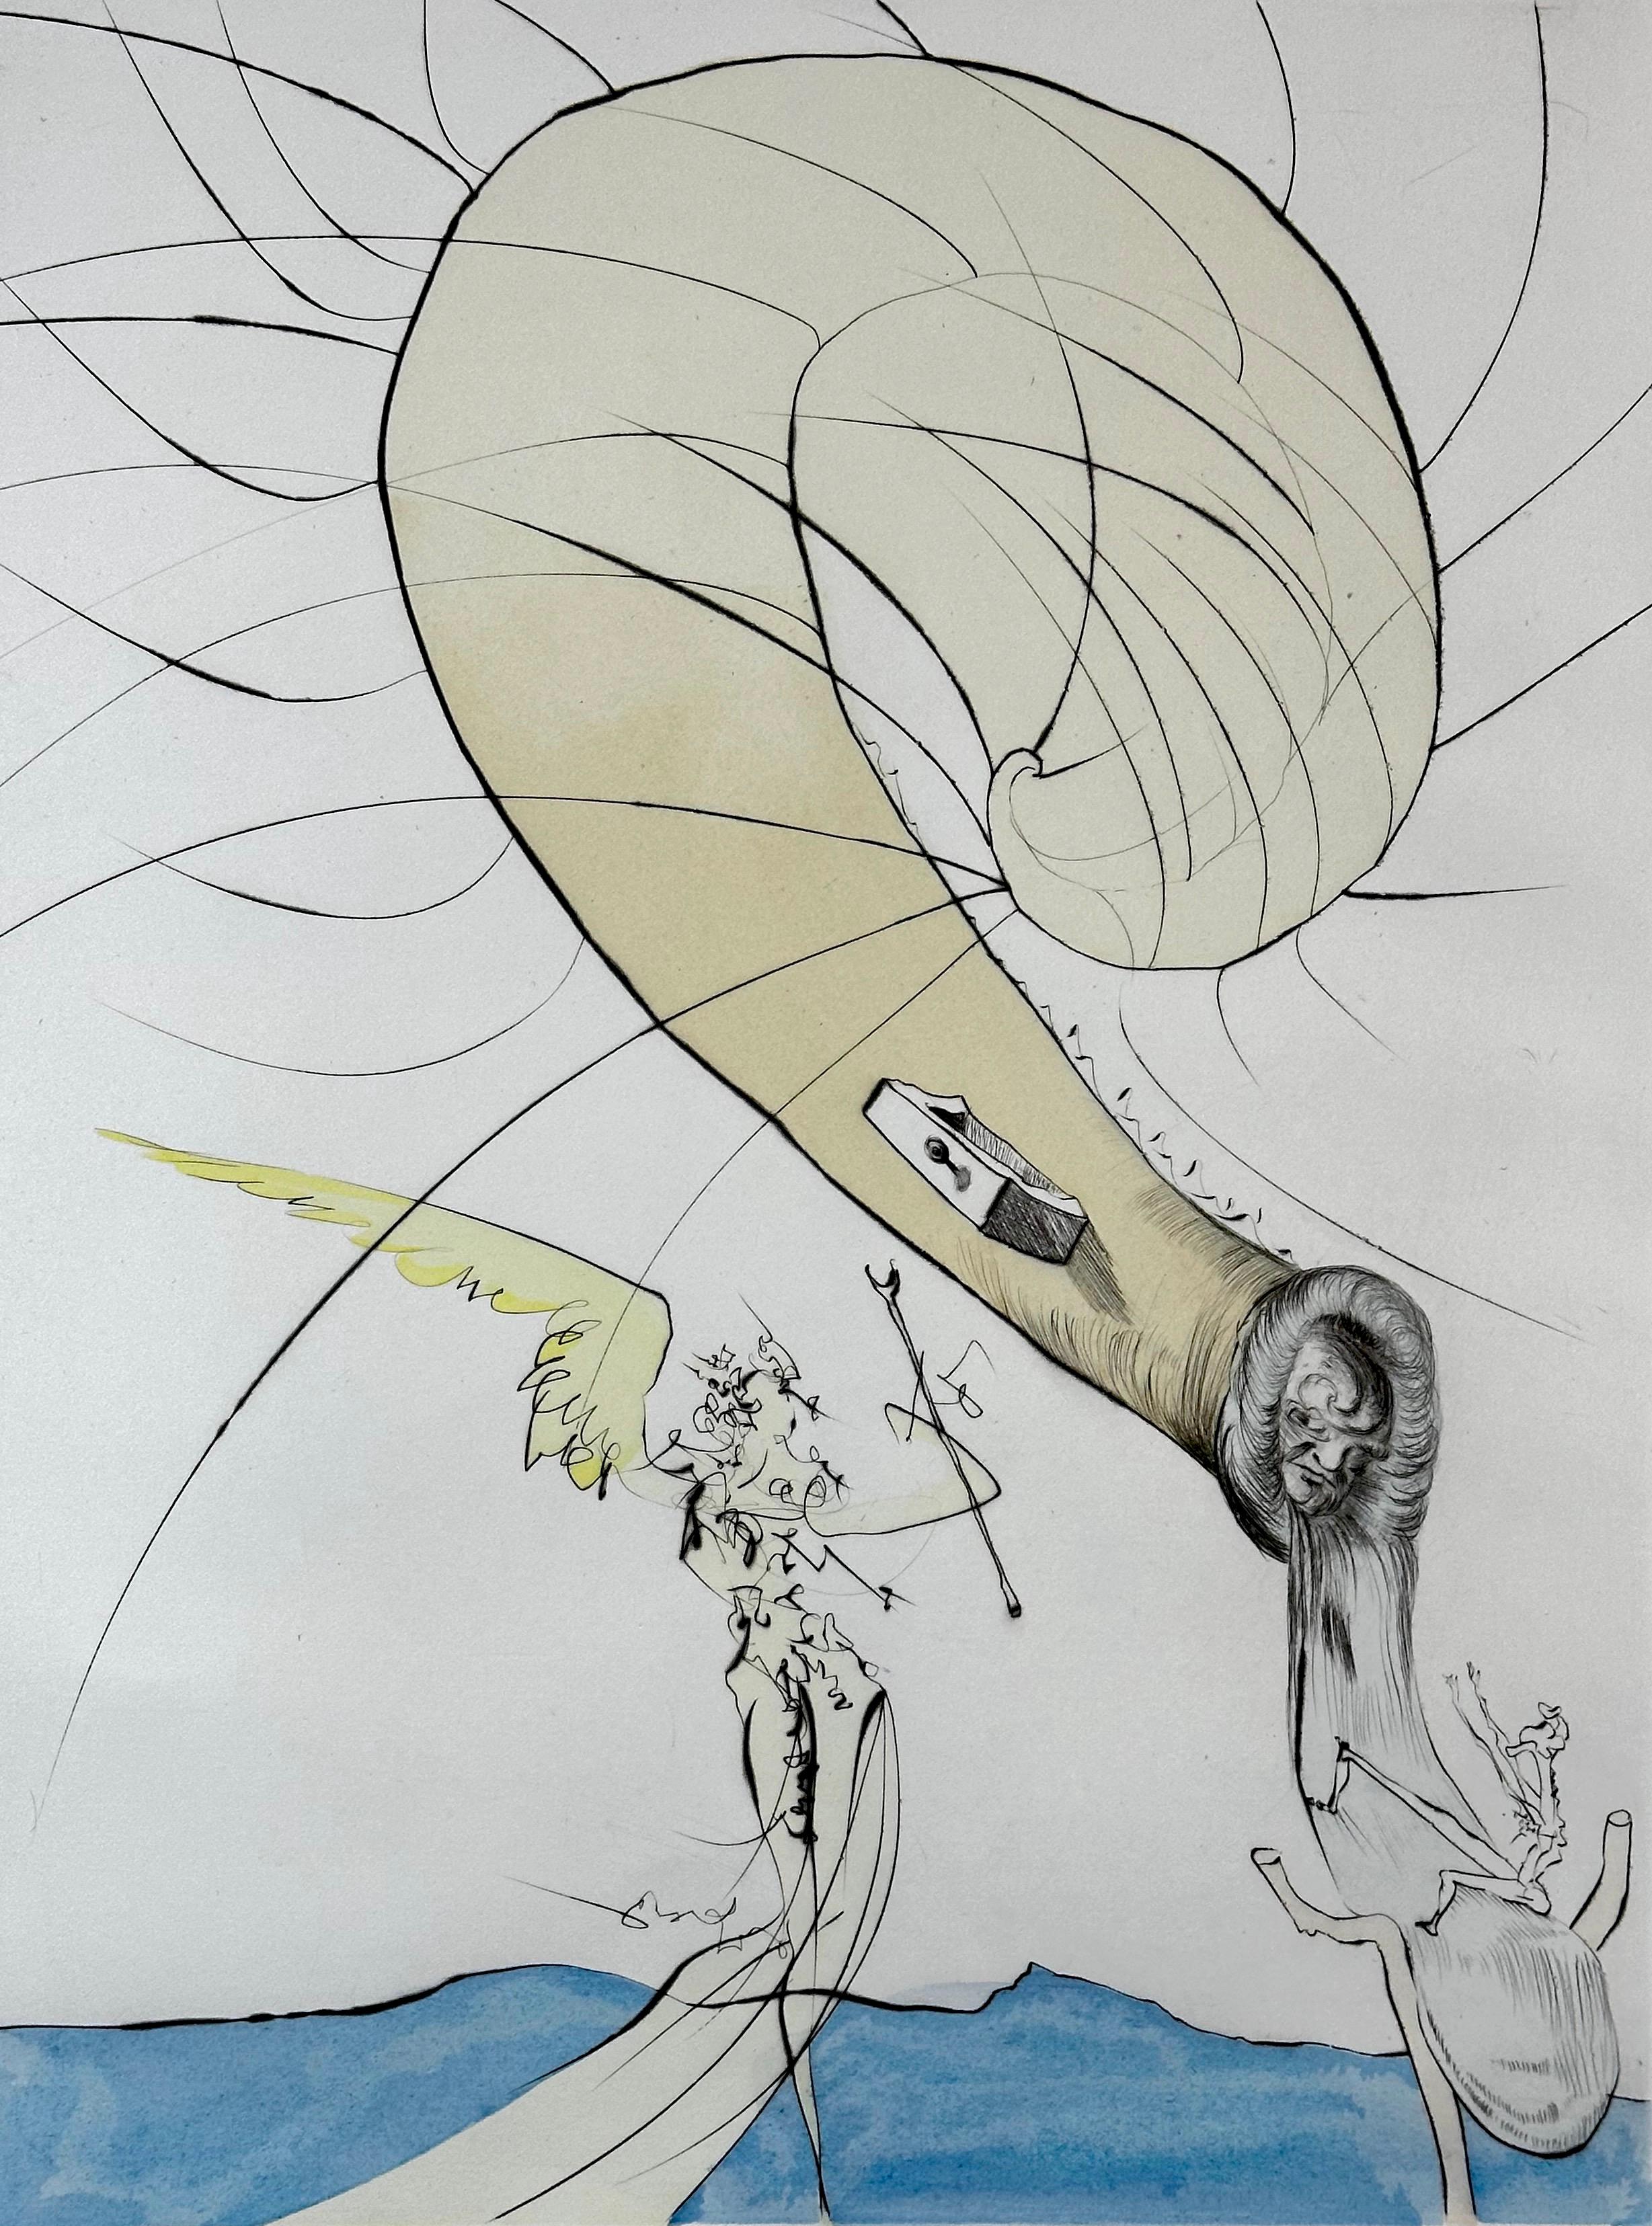 Nach 50 Jahren Surrealismus Freud mit Schneckenkopf – Print von Salvador Dalí